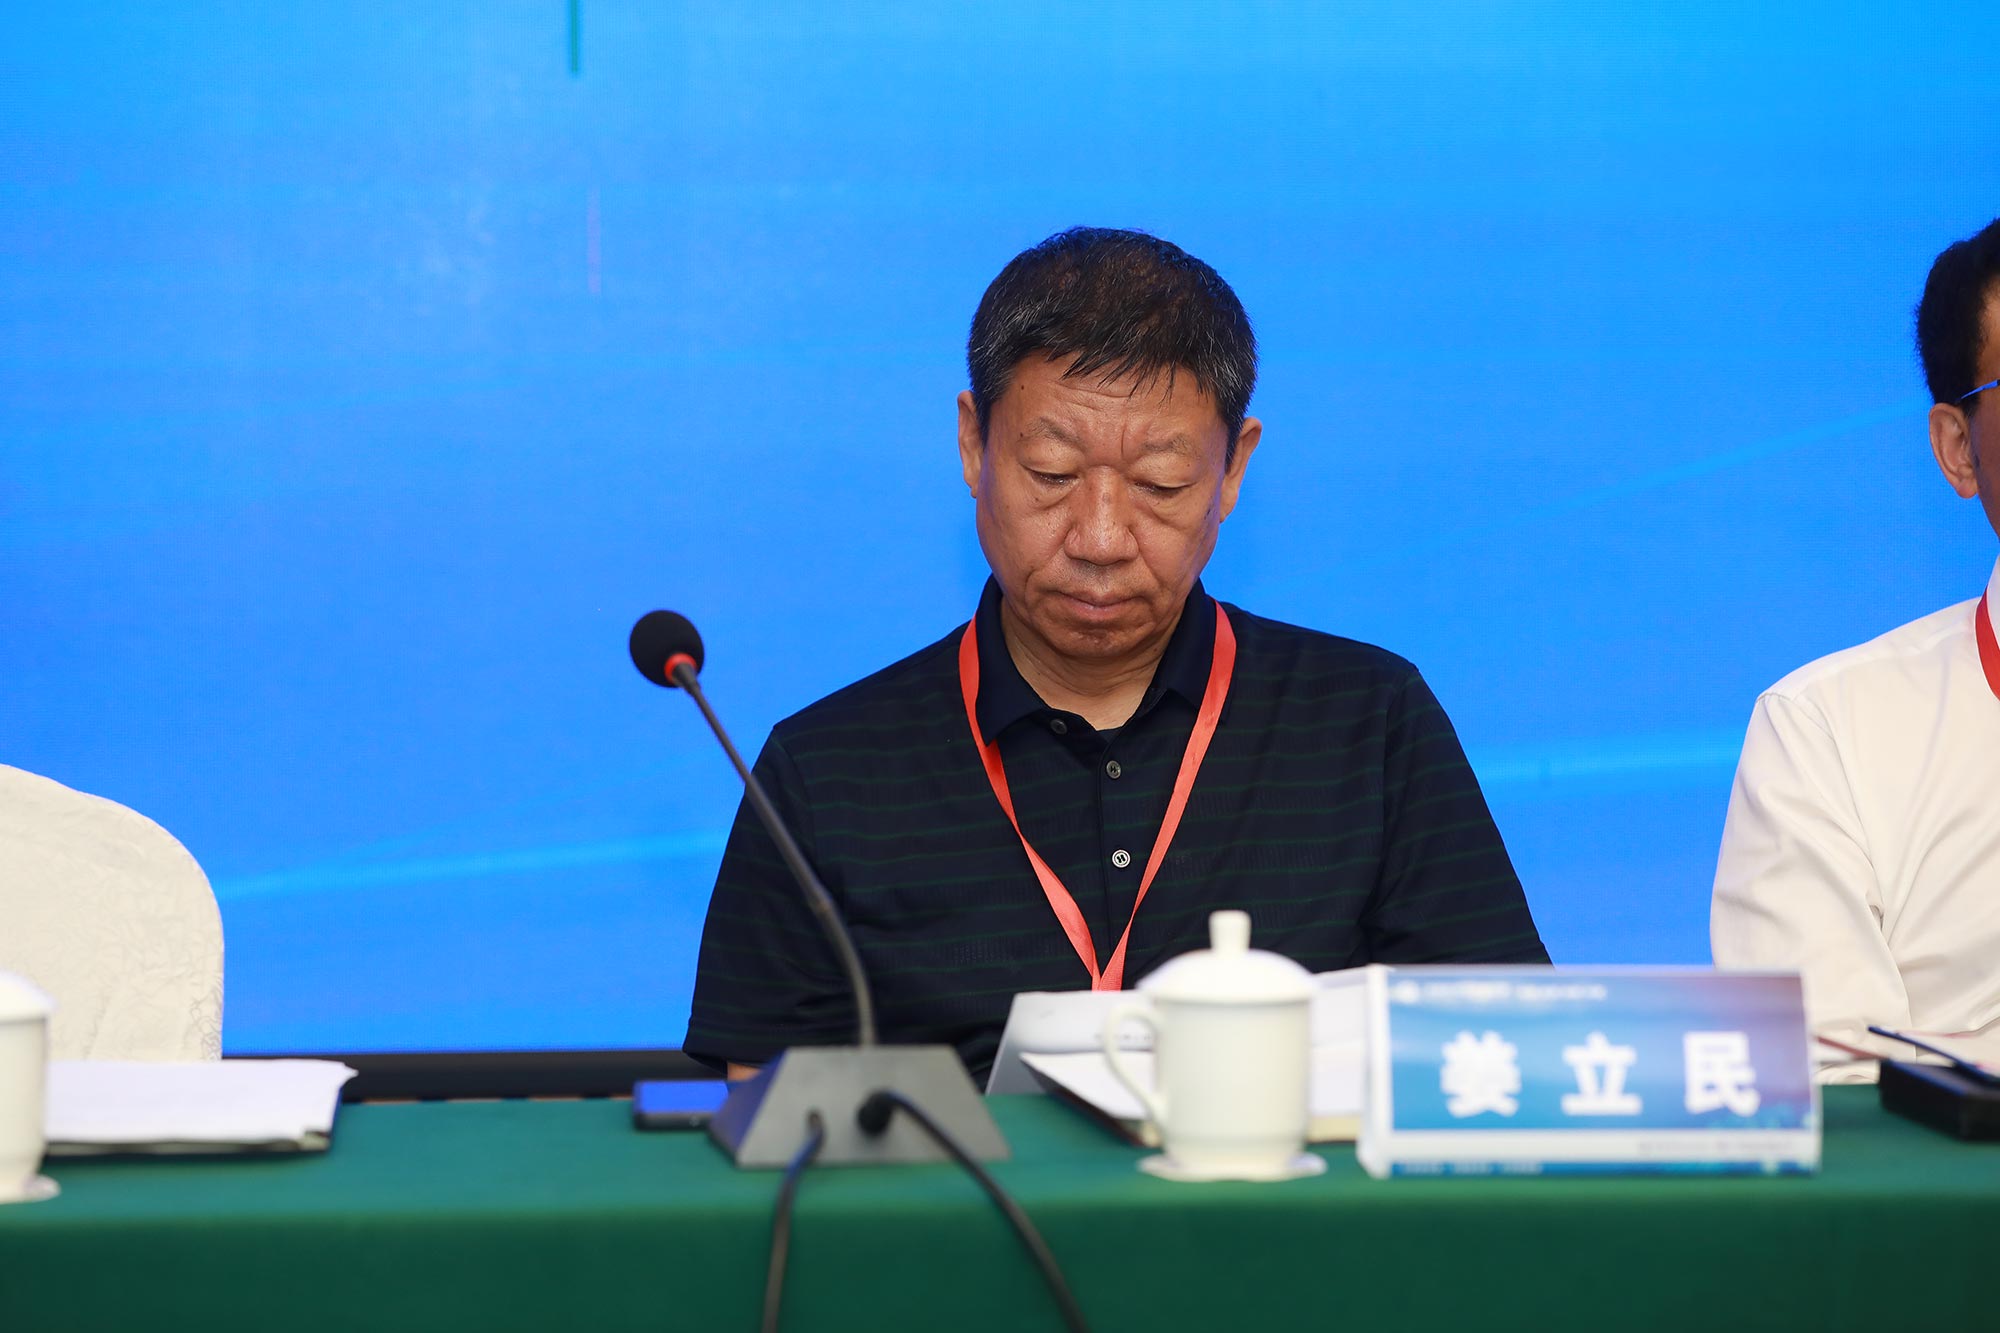 联盟常务副理事长、赤峰市教研中心主任姜立民在理事会上